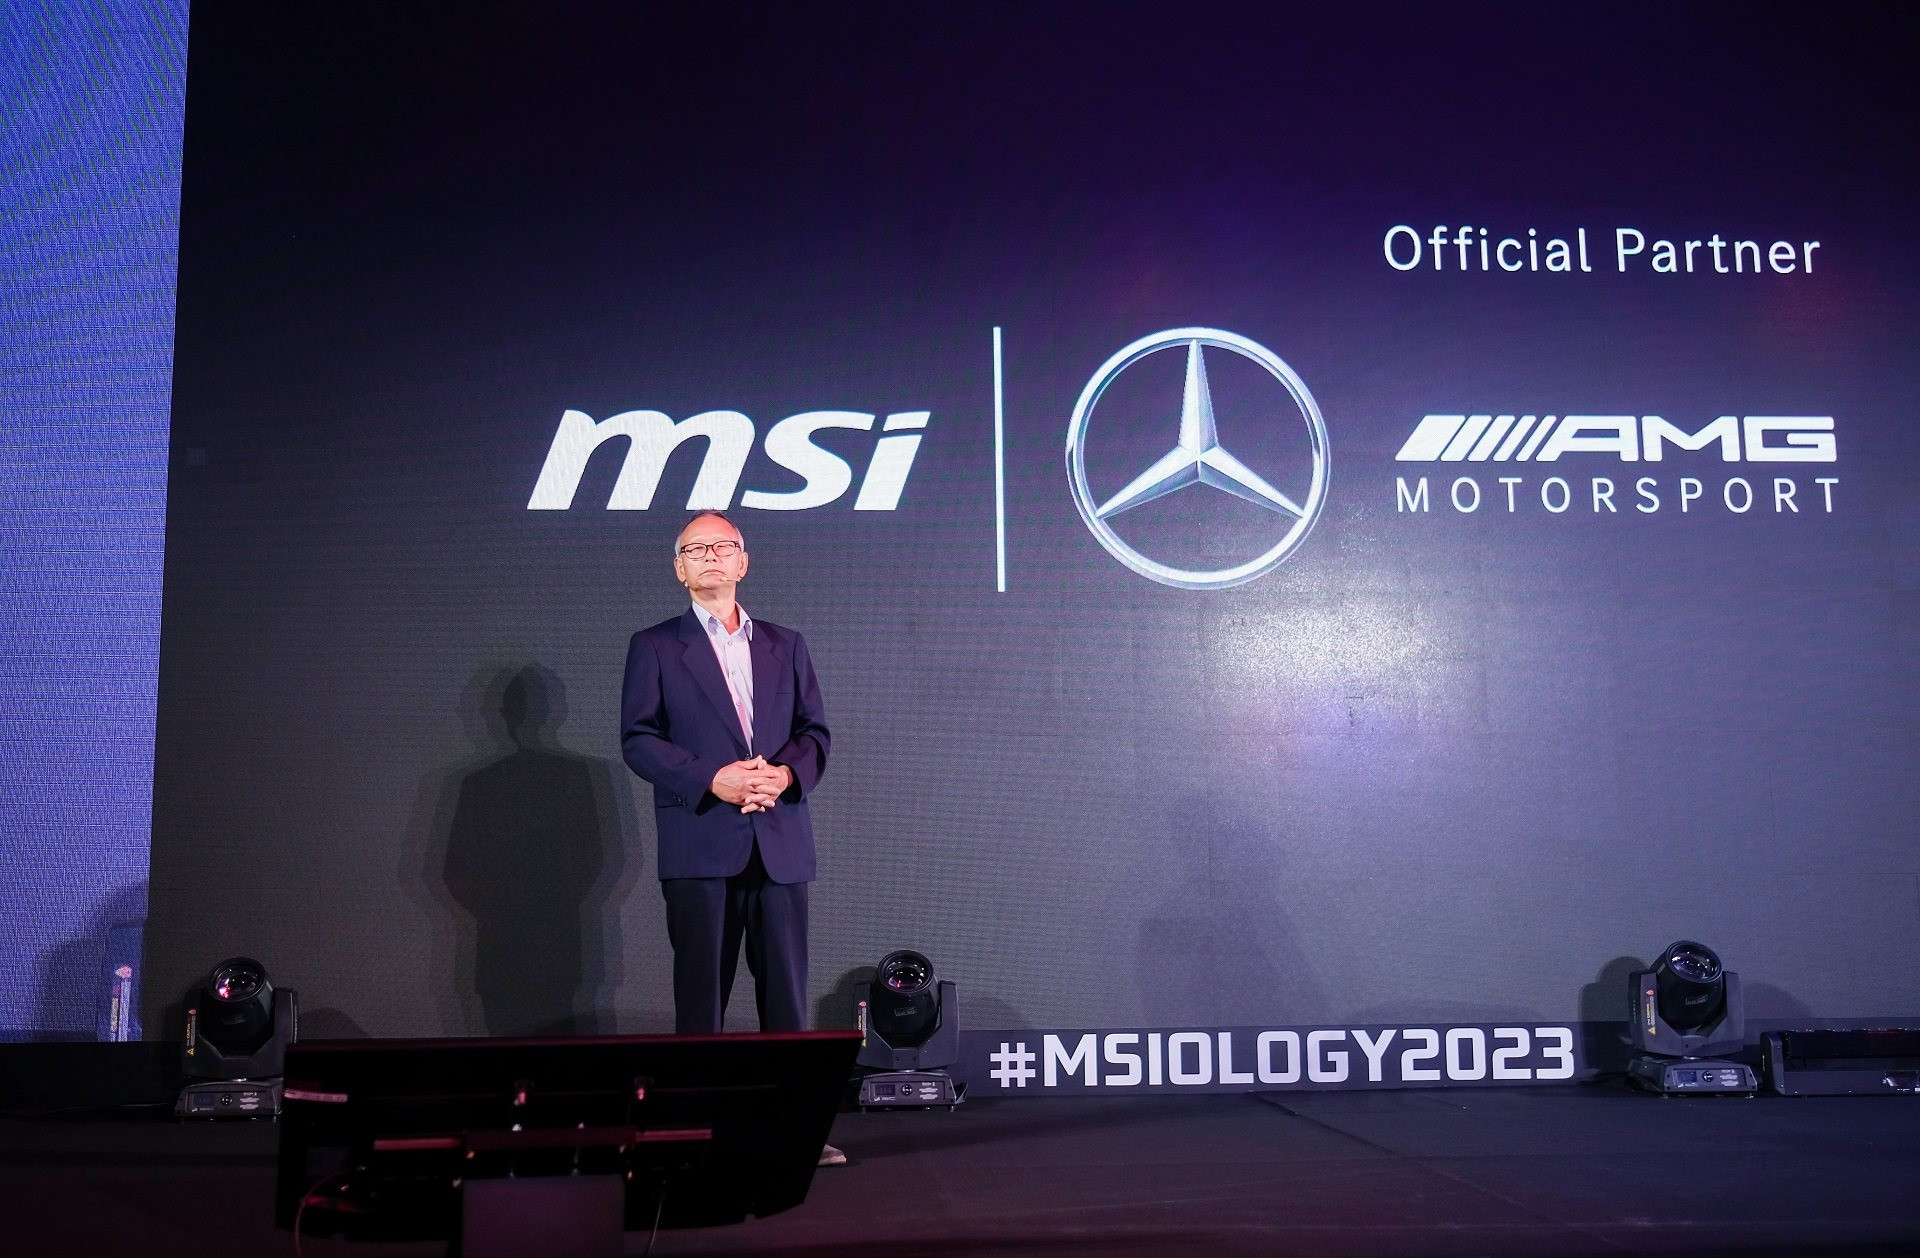 Trải nghiệm laptop của MSI lần đầu hợp tác cùng Mercedes-AMG tại Computex 2023: Xịn và đẹp - Ảnh 2.